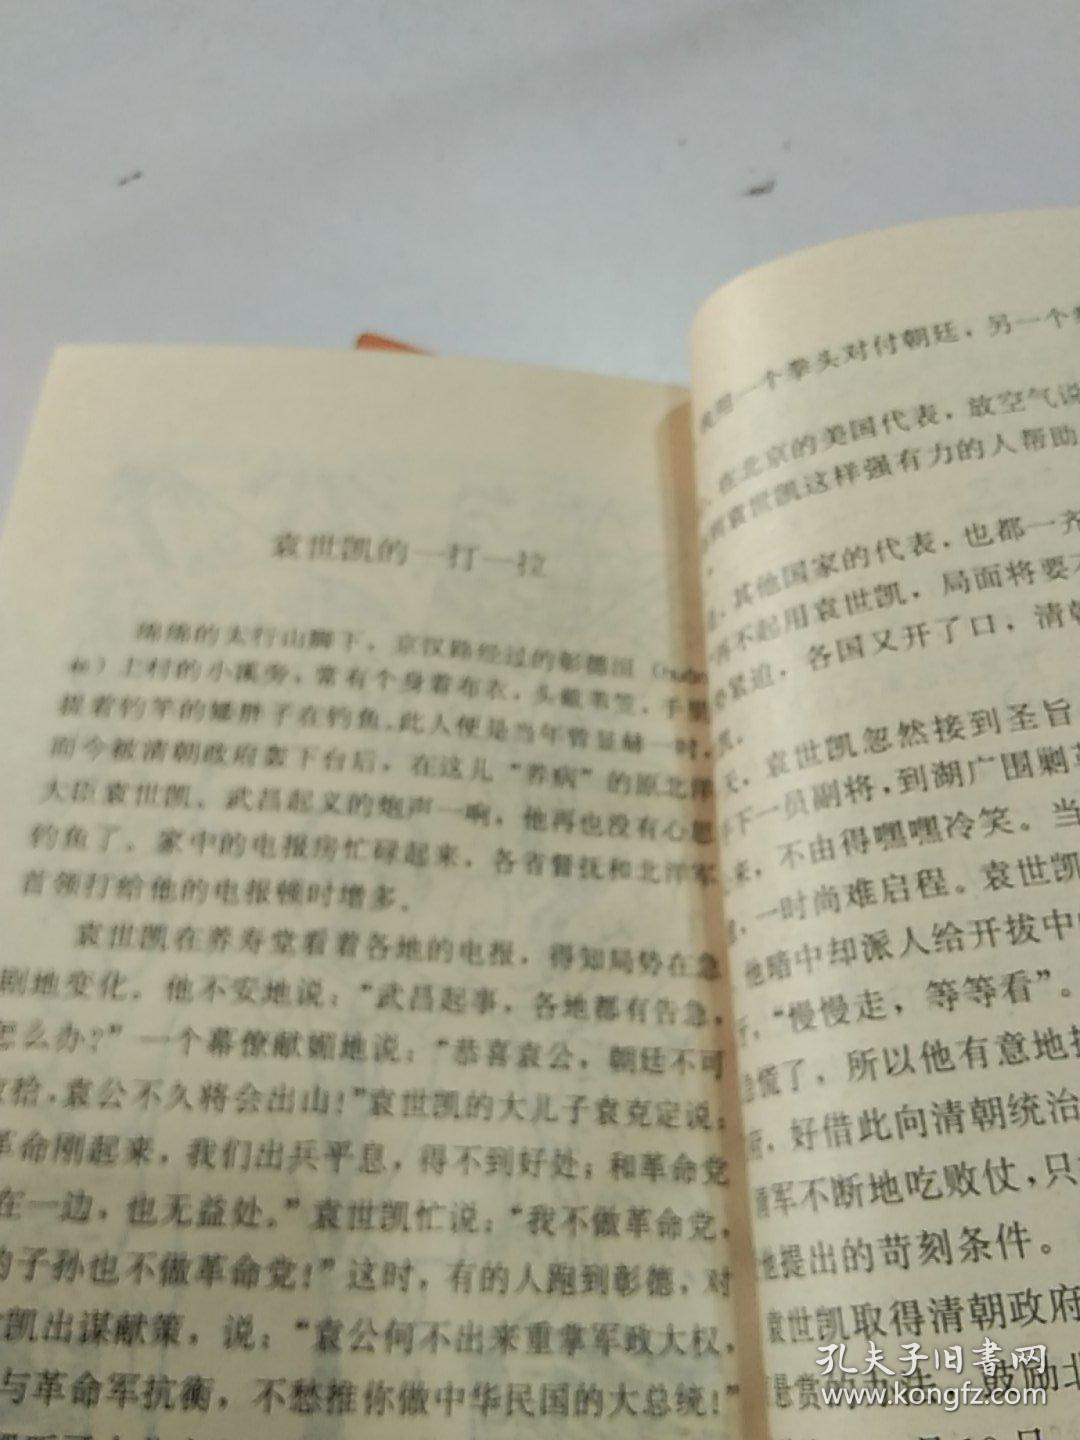 历史事件小故事丛书:辛亥革命的故事  陈桥兵变